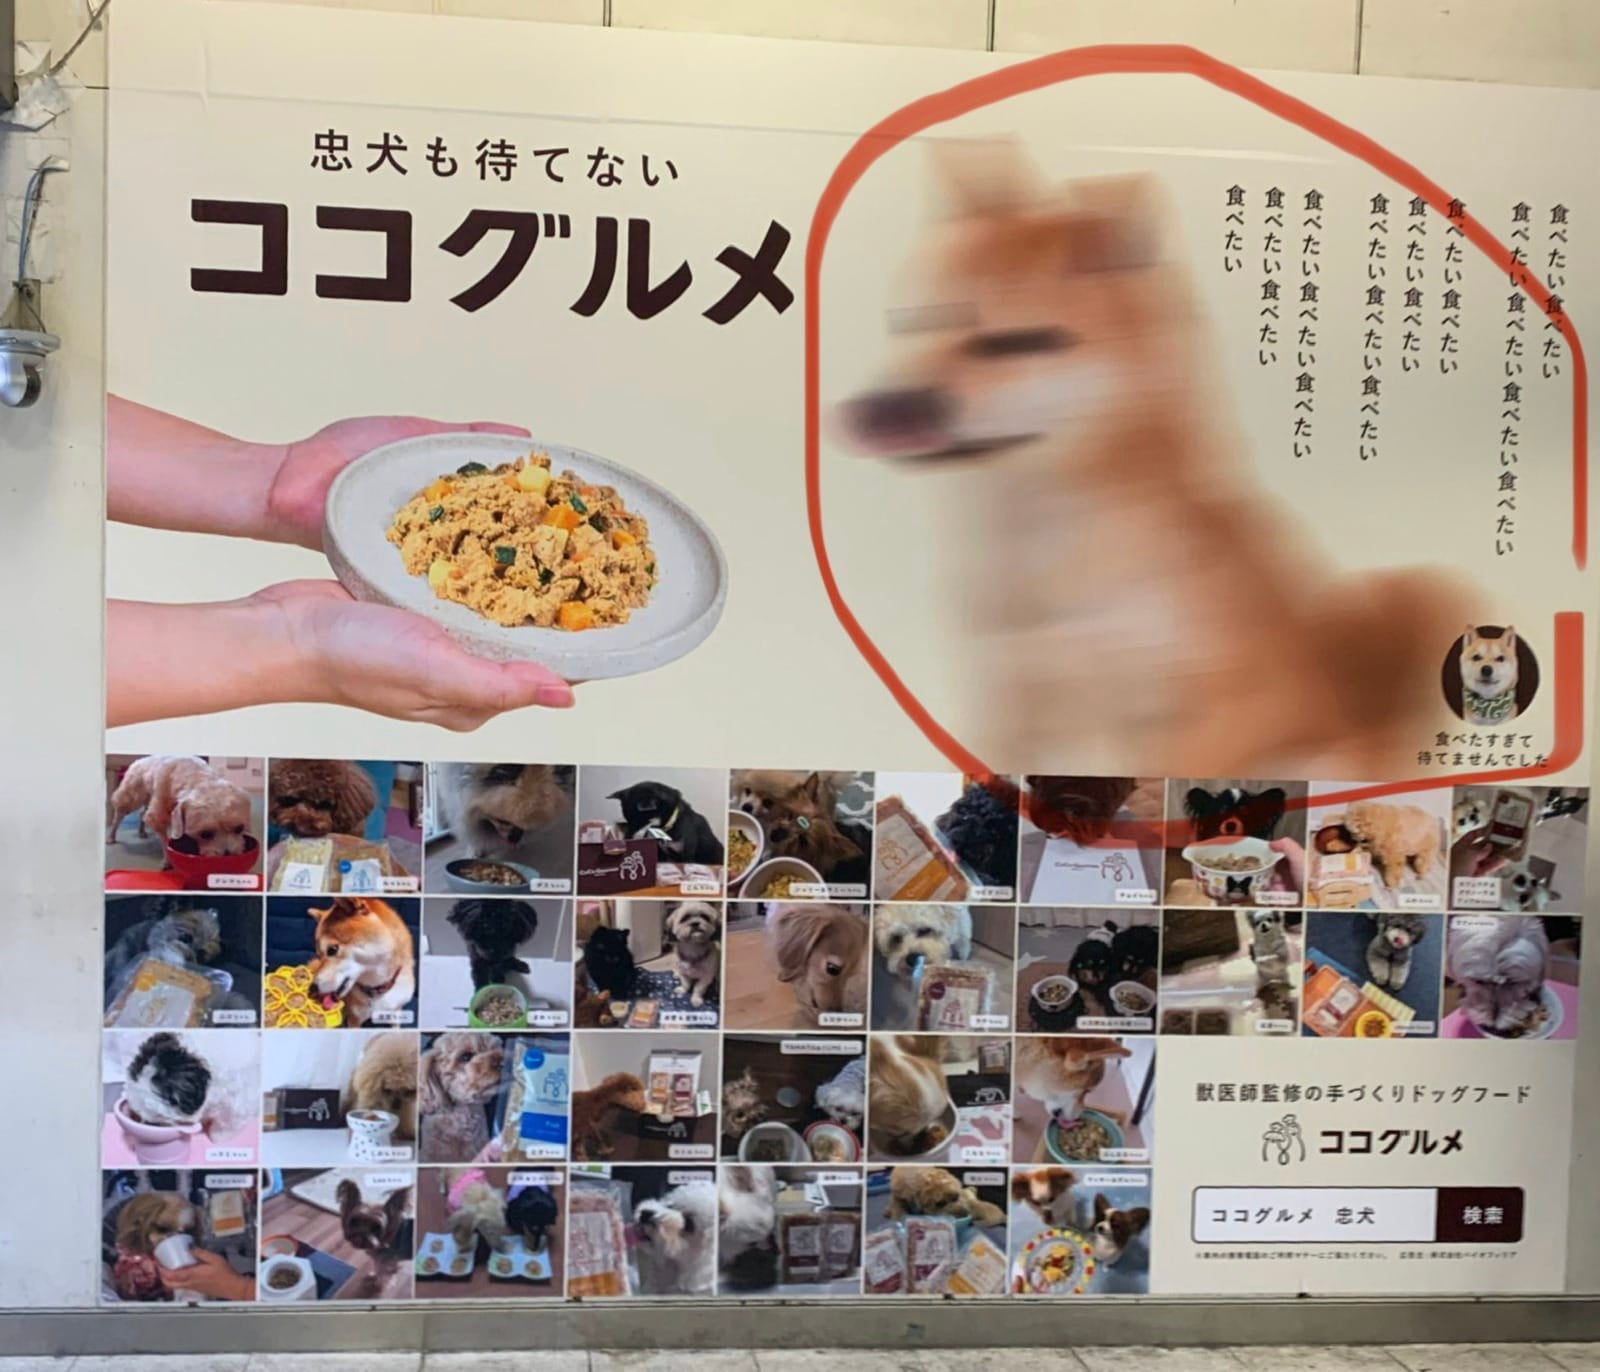 ภาพหมาชิบะถ่ายโฆษณาอาหารหมาครั้งแรก